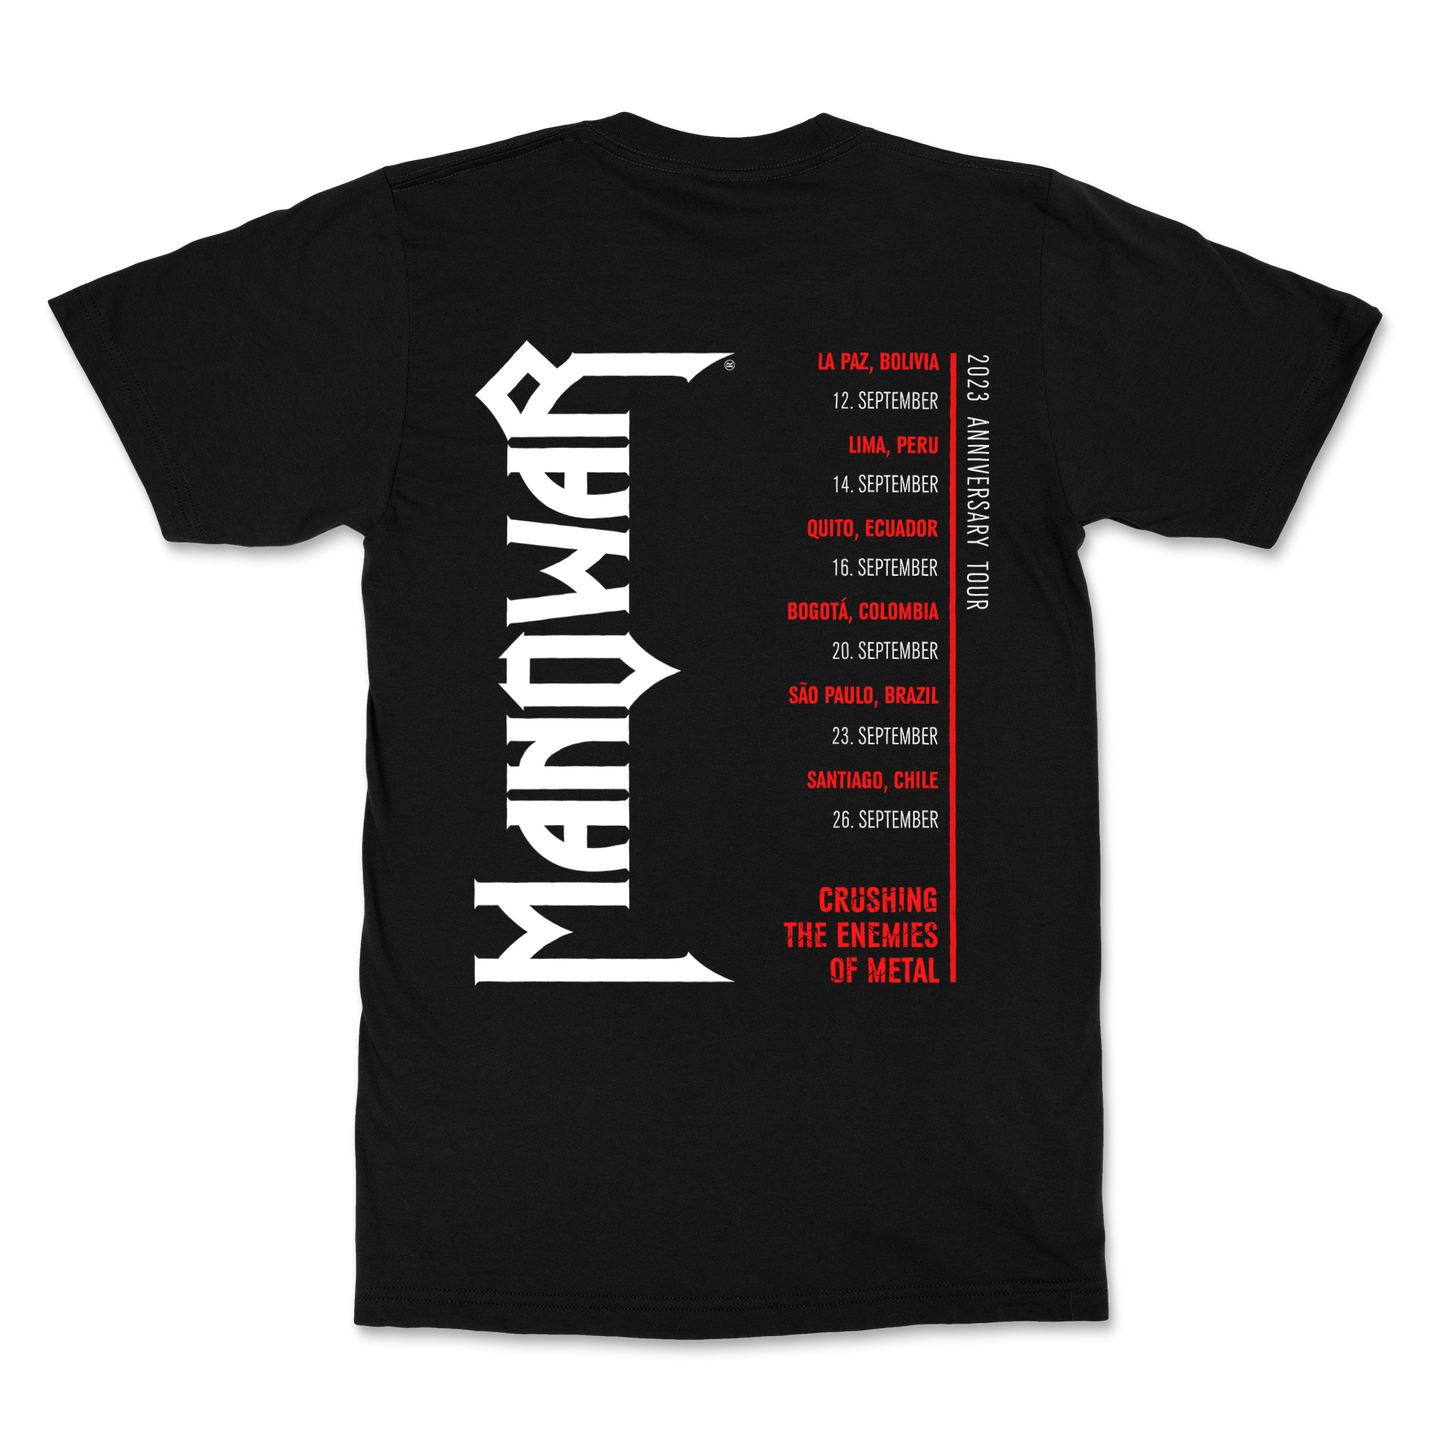 Manowar T-shirt Crushing the Enemies of Metal - Tour T-shirt South America